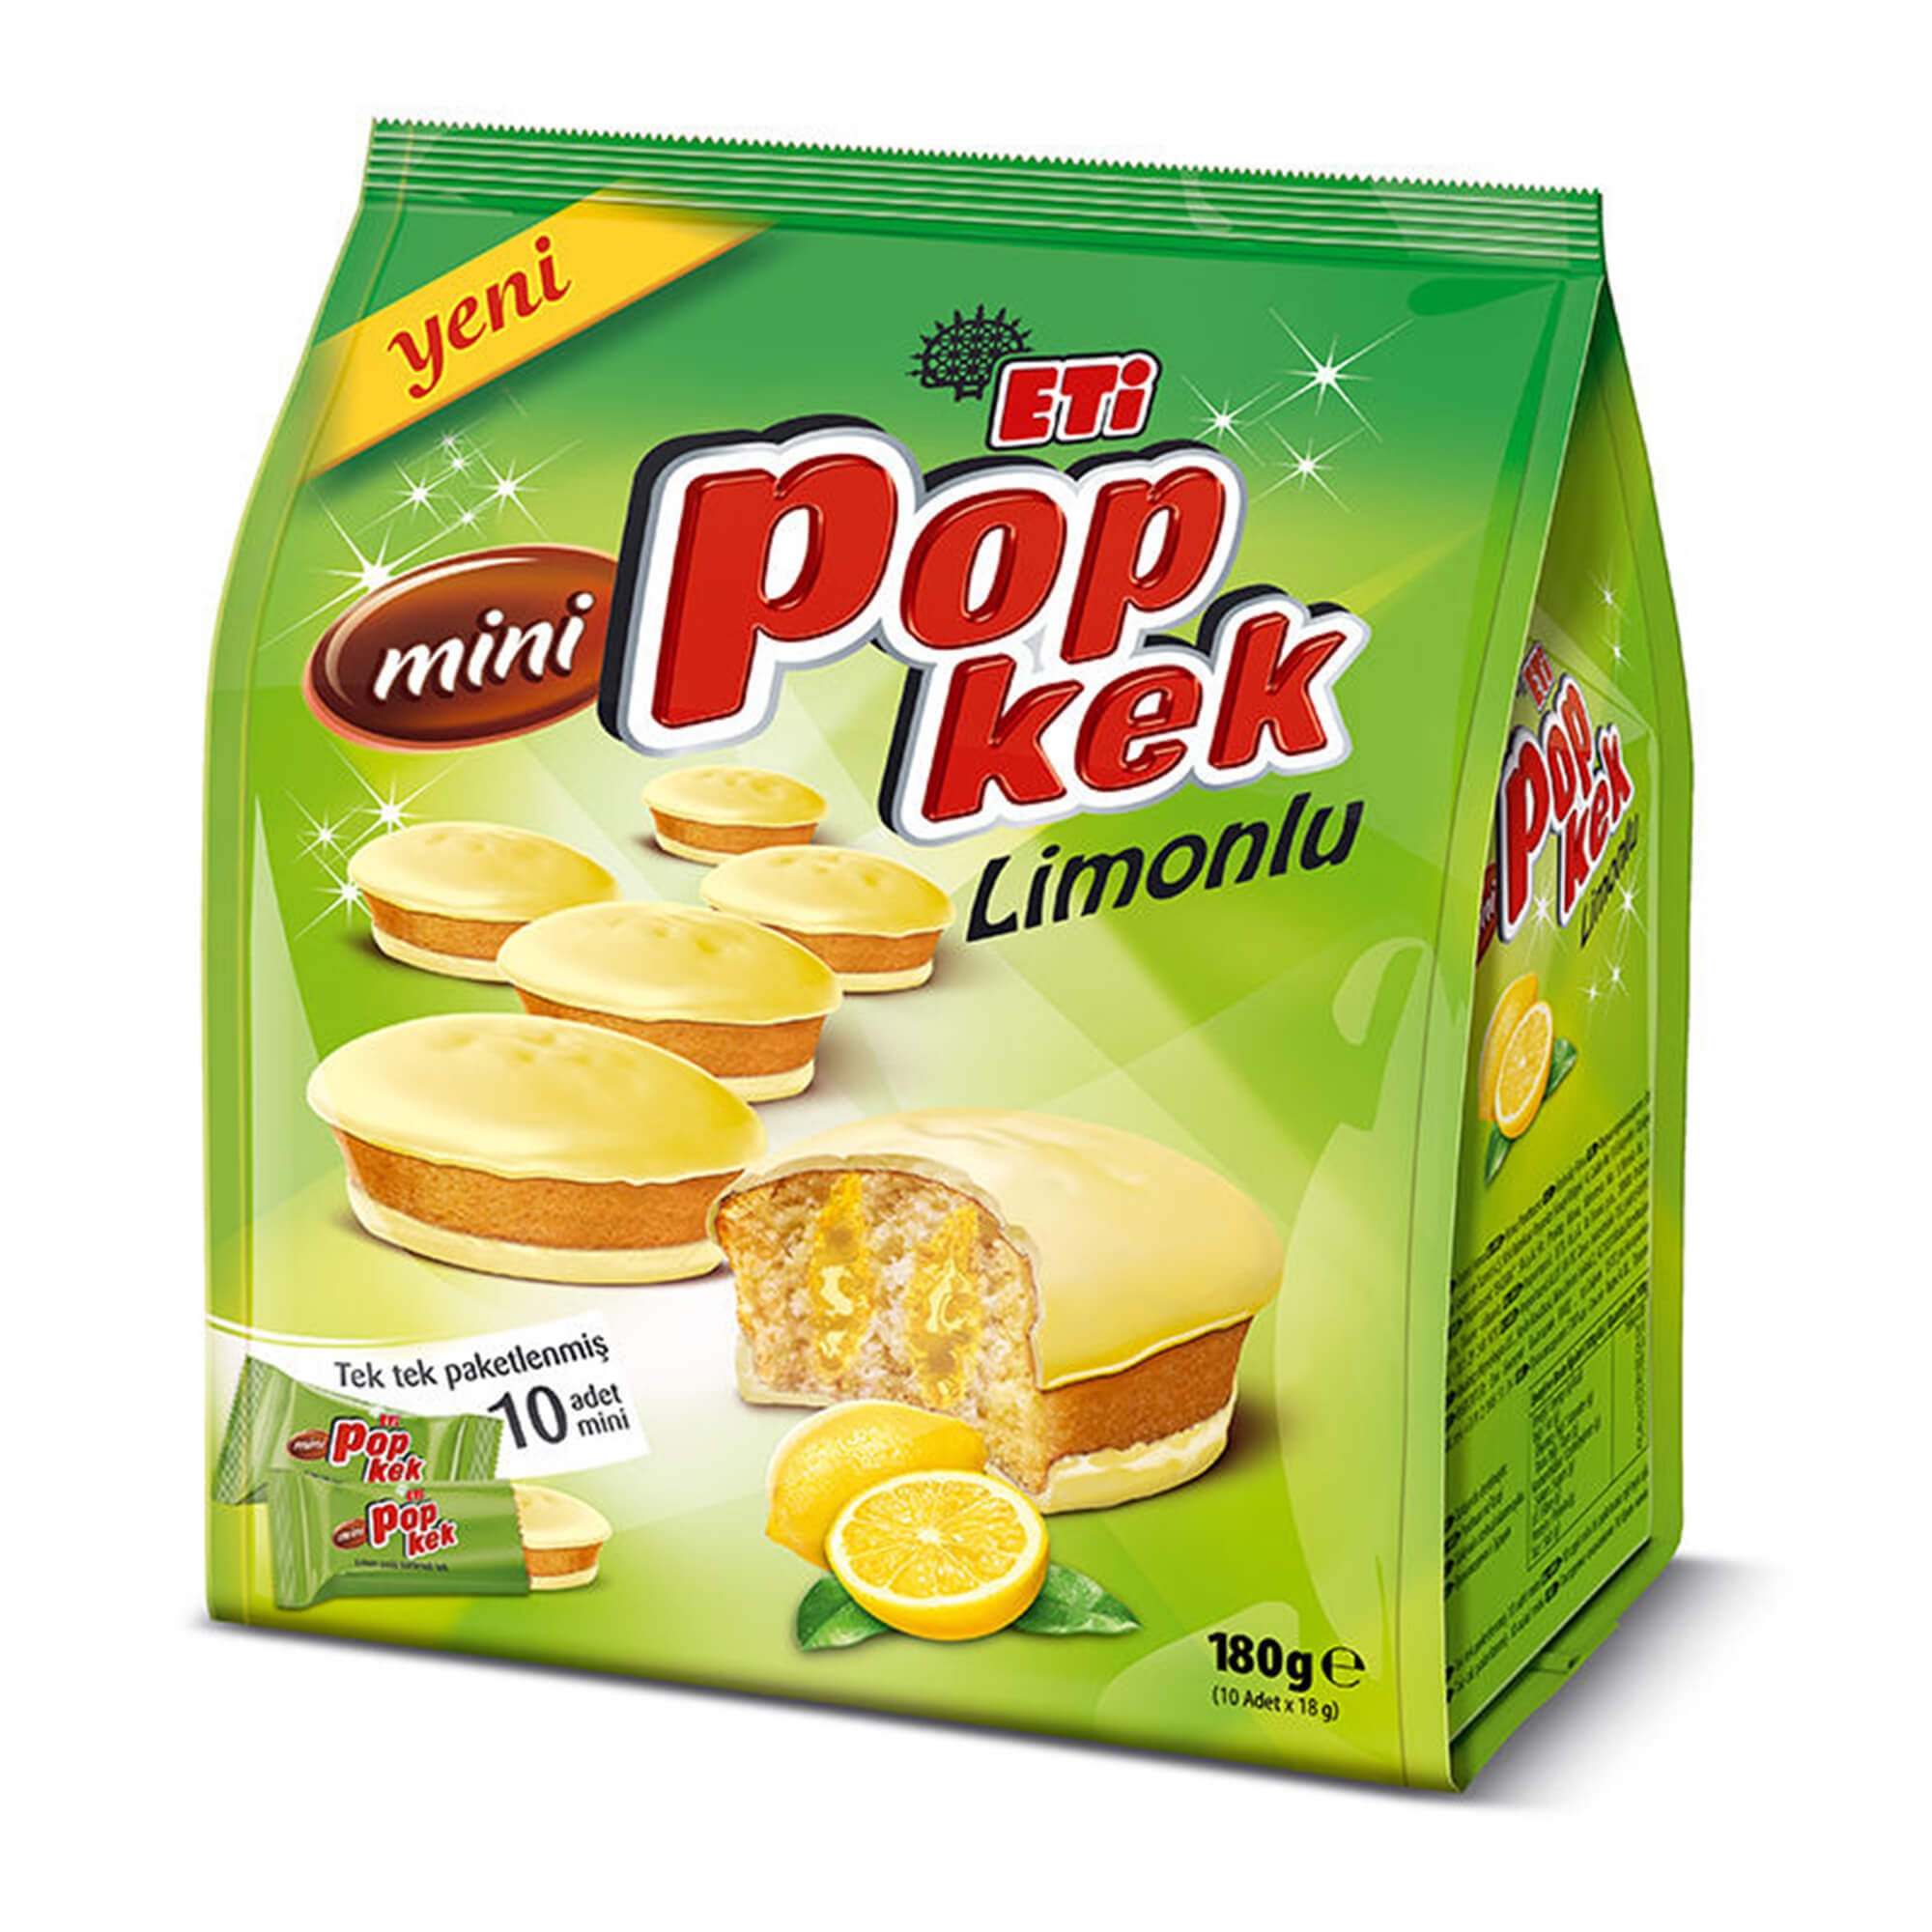 Eti Popkek Mini Limonlu 180 Gr